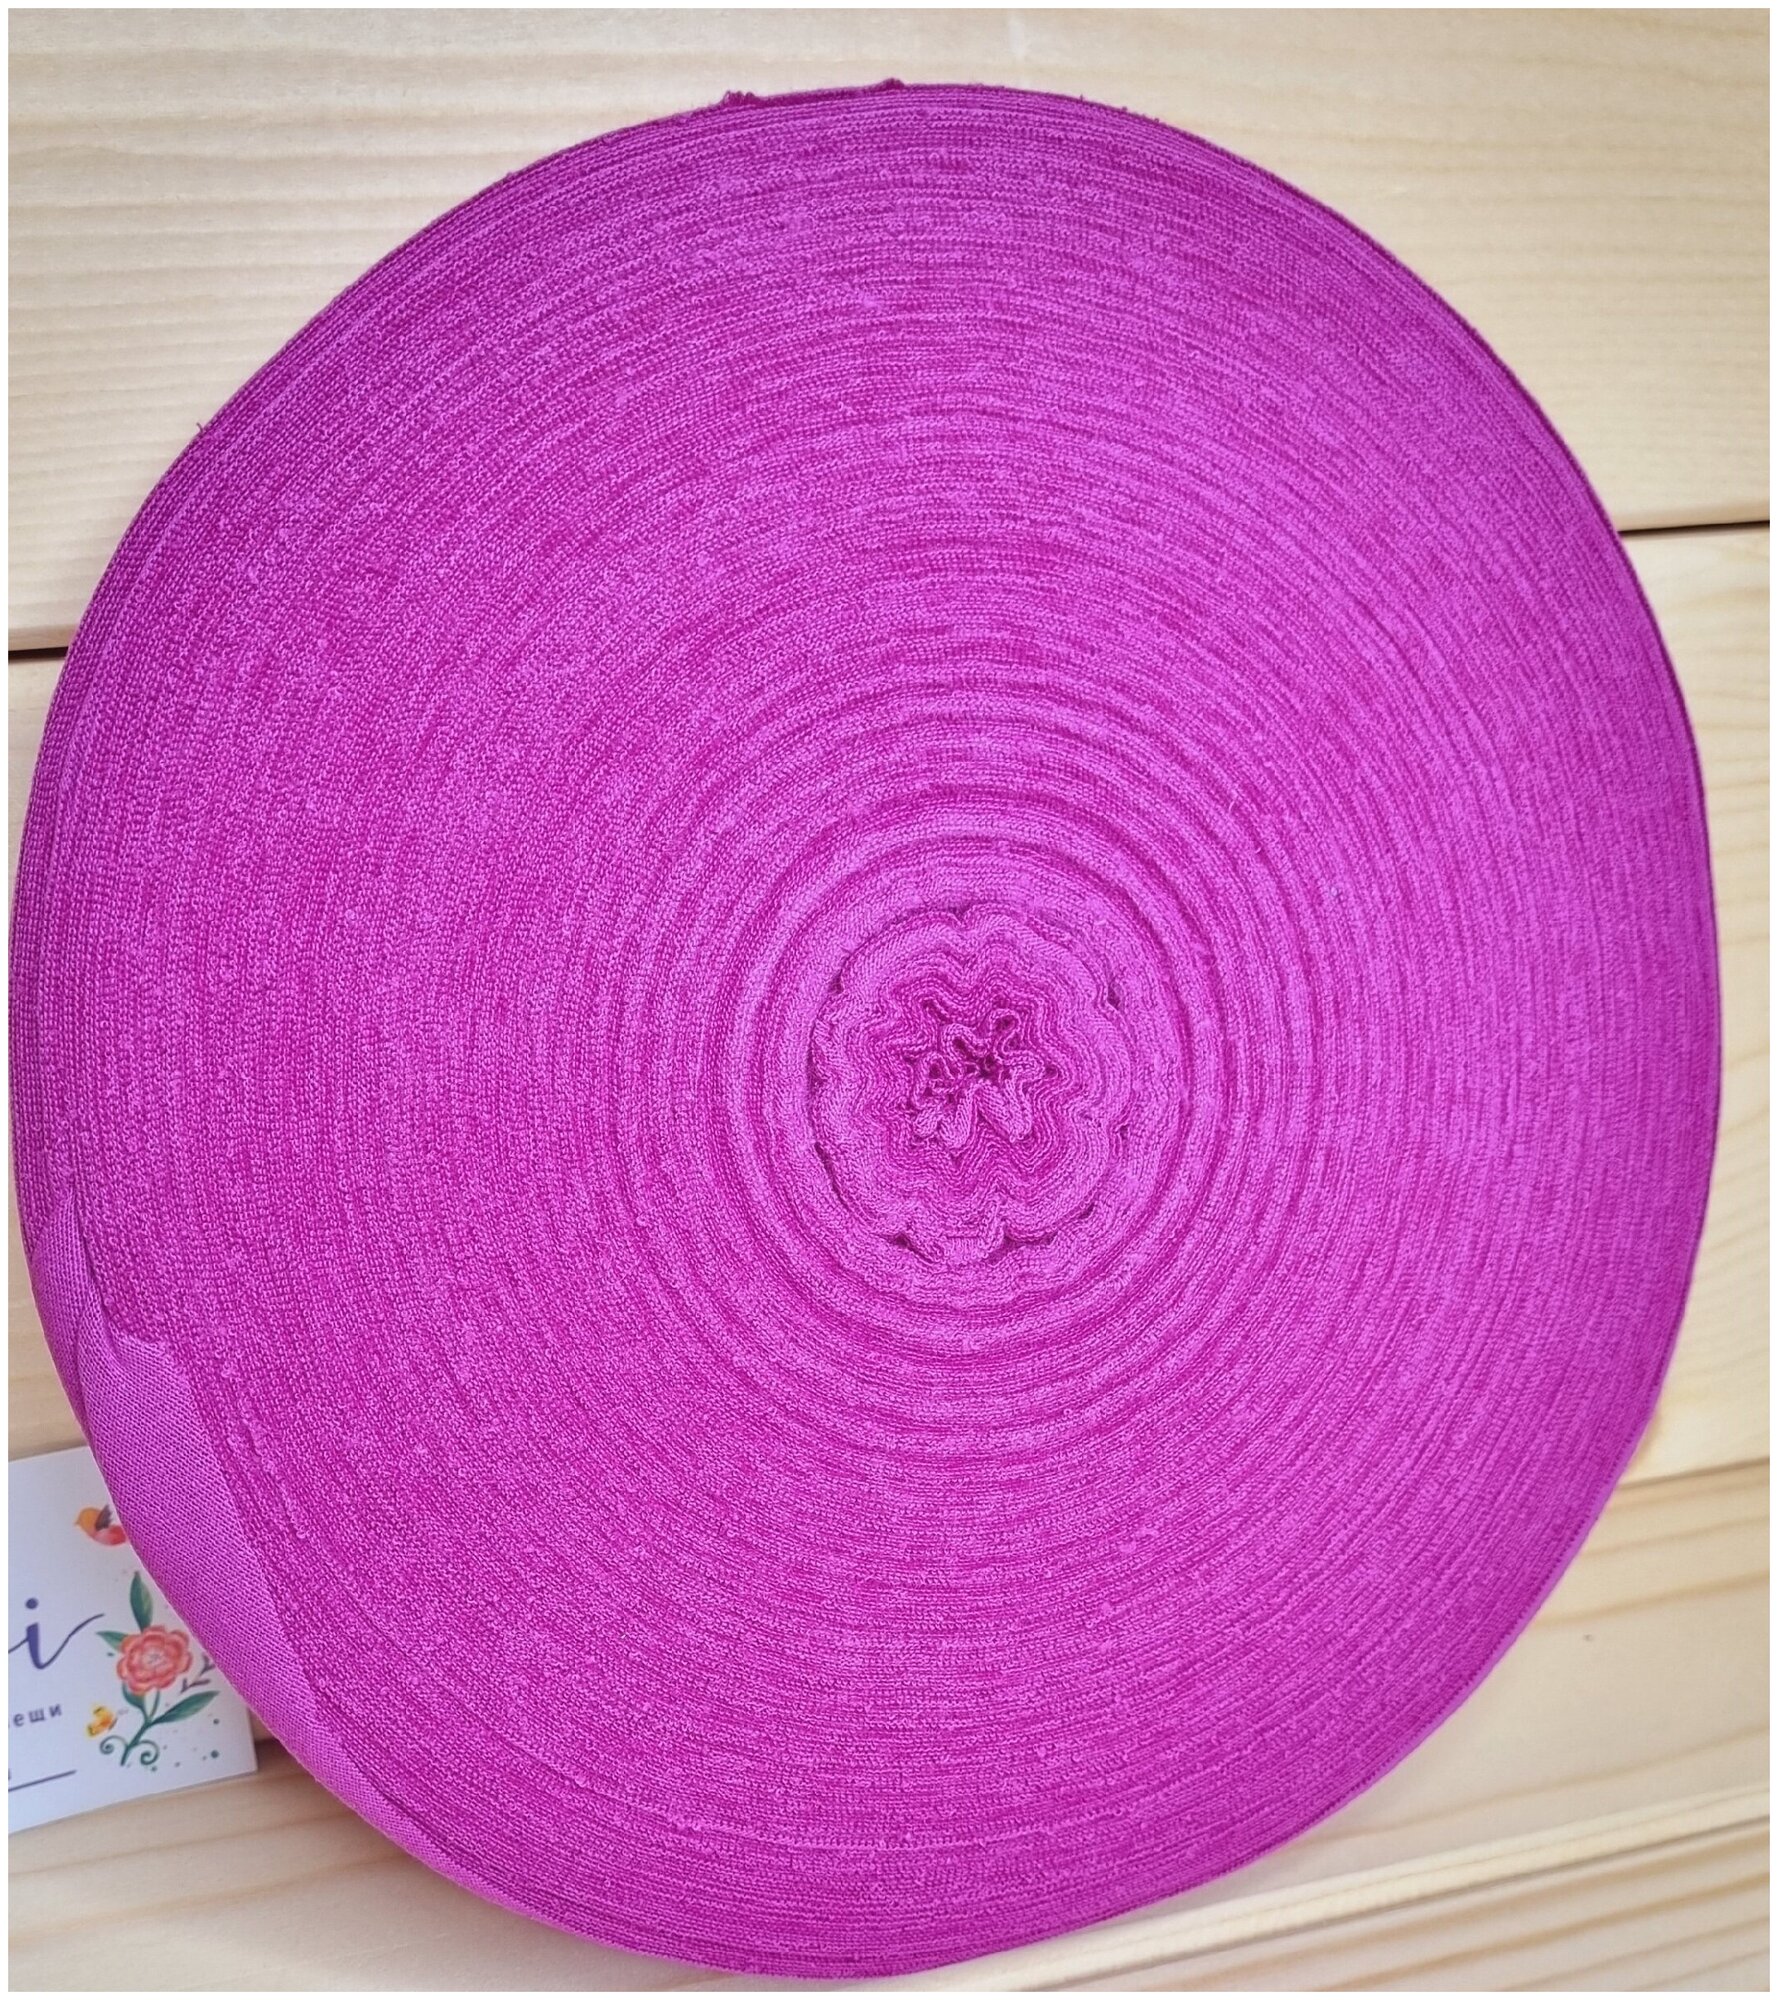 Трикотажная пряжа Bombi в роликах, цвет Пурпурный, Первичная, Изнаночная нарезка